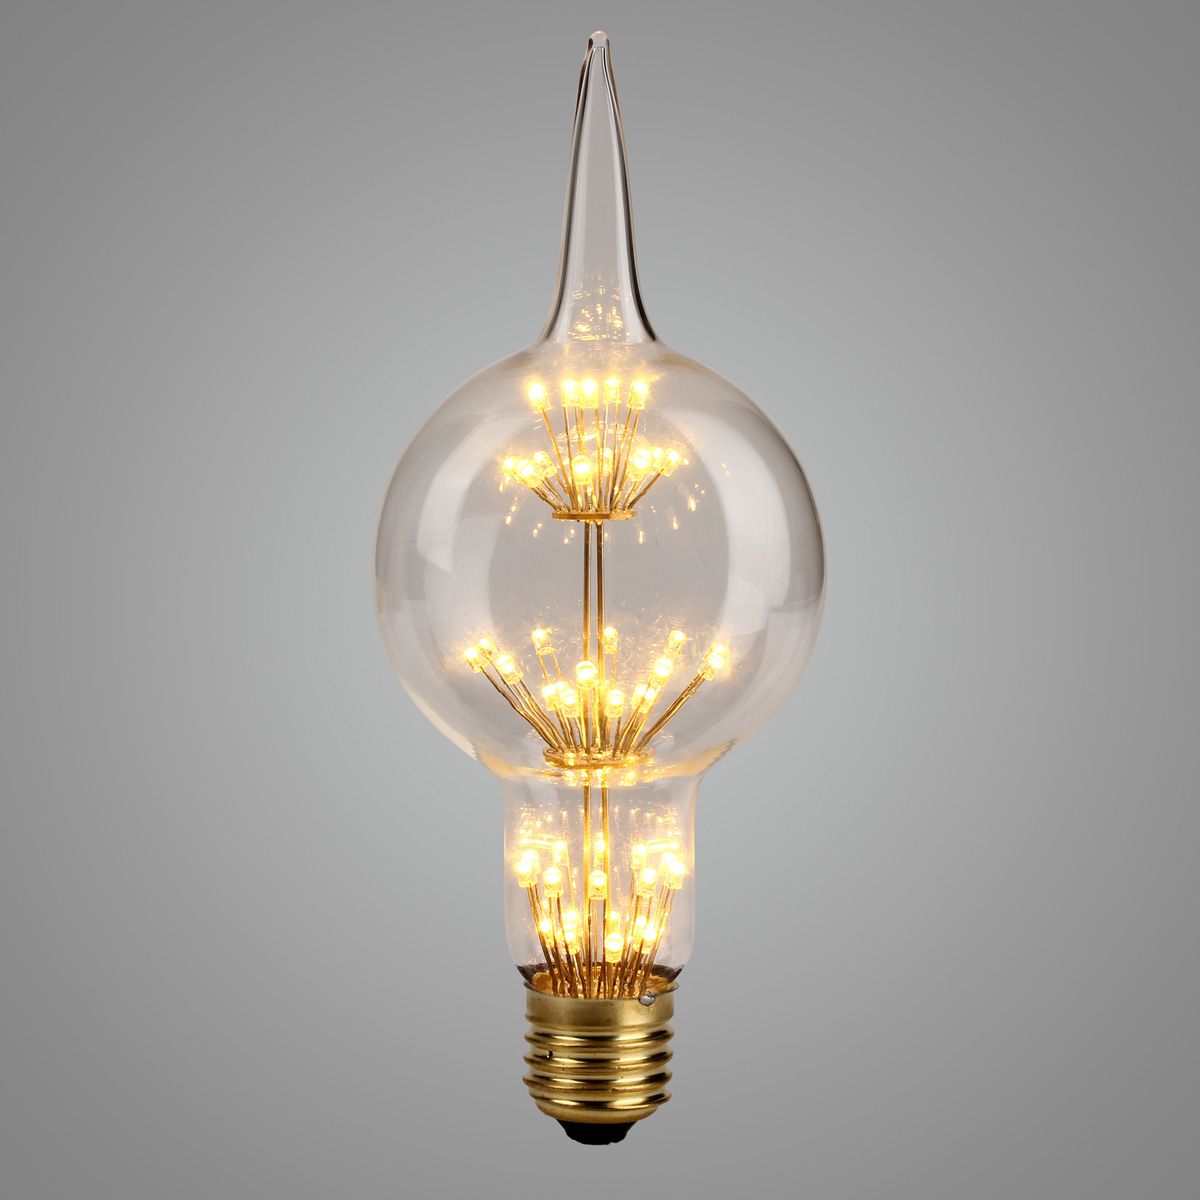 AC85-265V-E27-3W-Gourd-Style-Star-Warm-White-Edison-Incandescent-Light-Bulb-for-Home-Garden-1429356